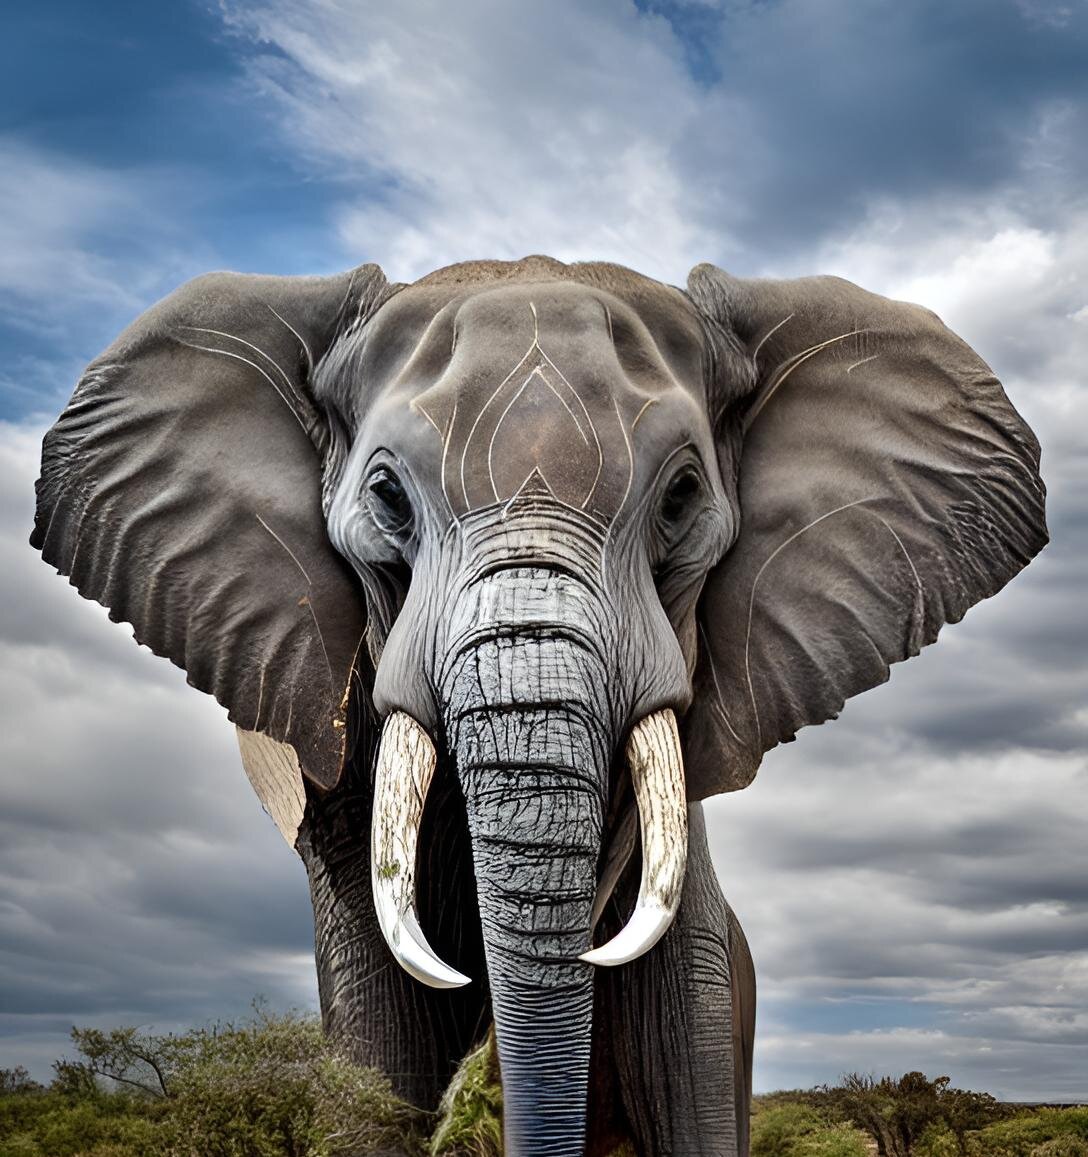 Во многих культурах слоны считаются символами силы, мудрости, вдохновения и благоговения. Их сила легендарна на протяжении всей истории, а также мифологии.-2